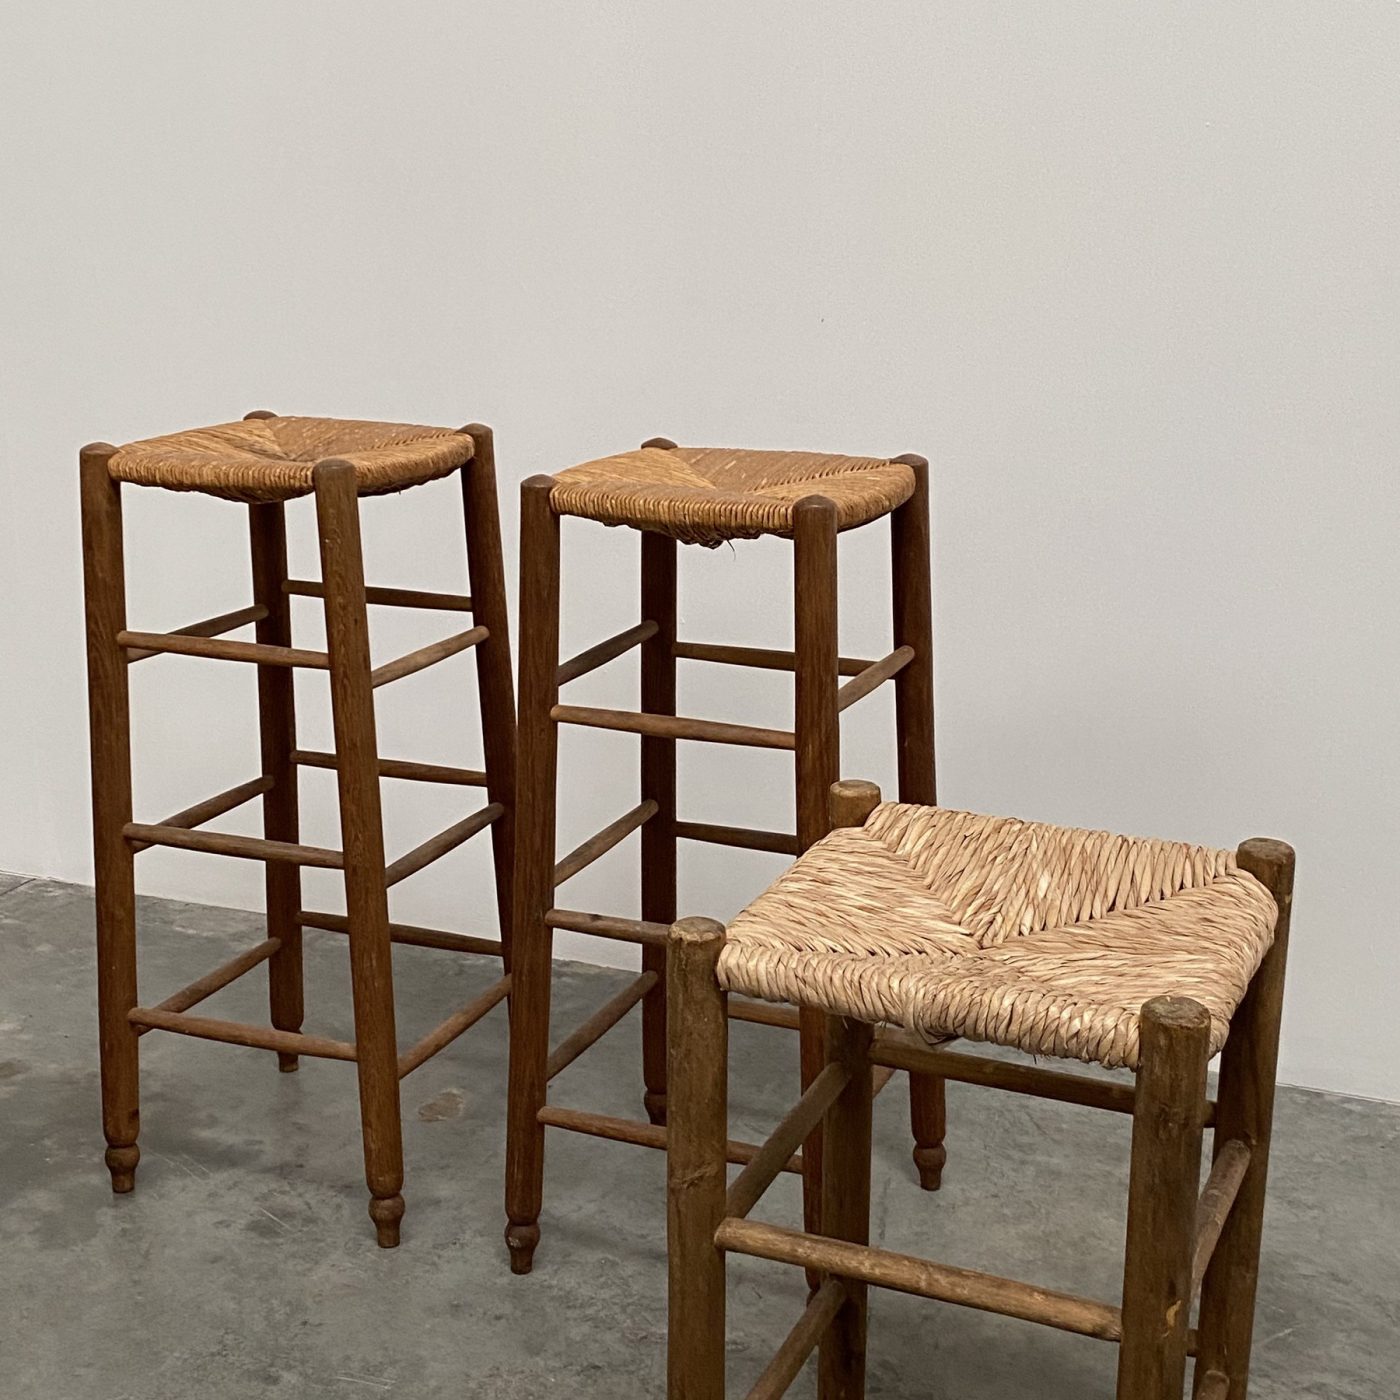 objet-vagabond-french-stools0005